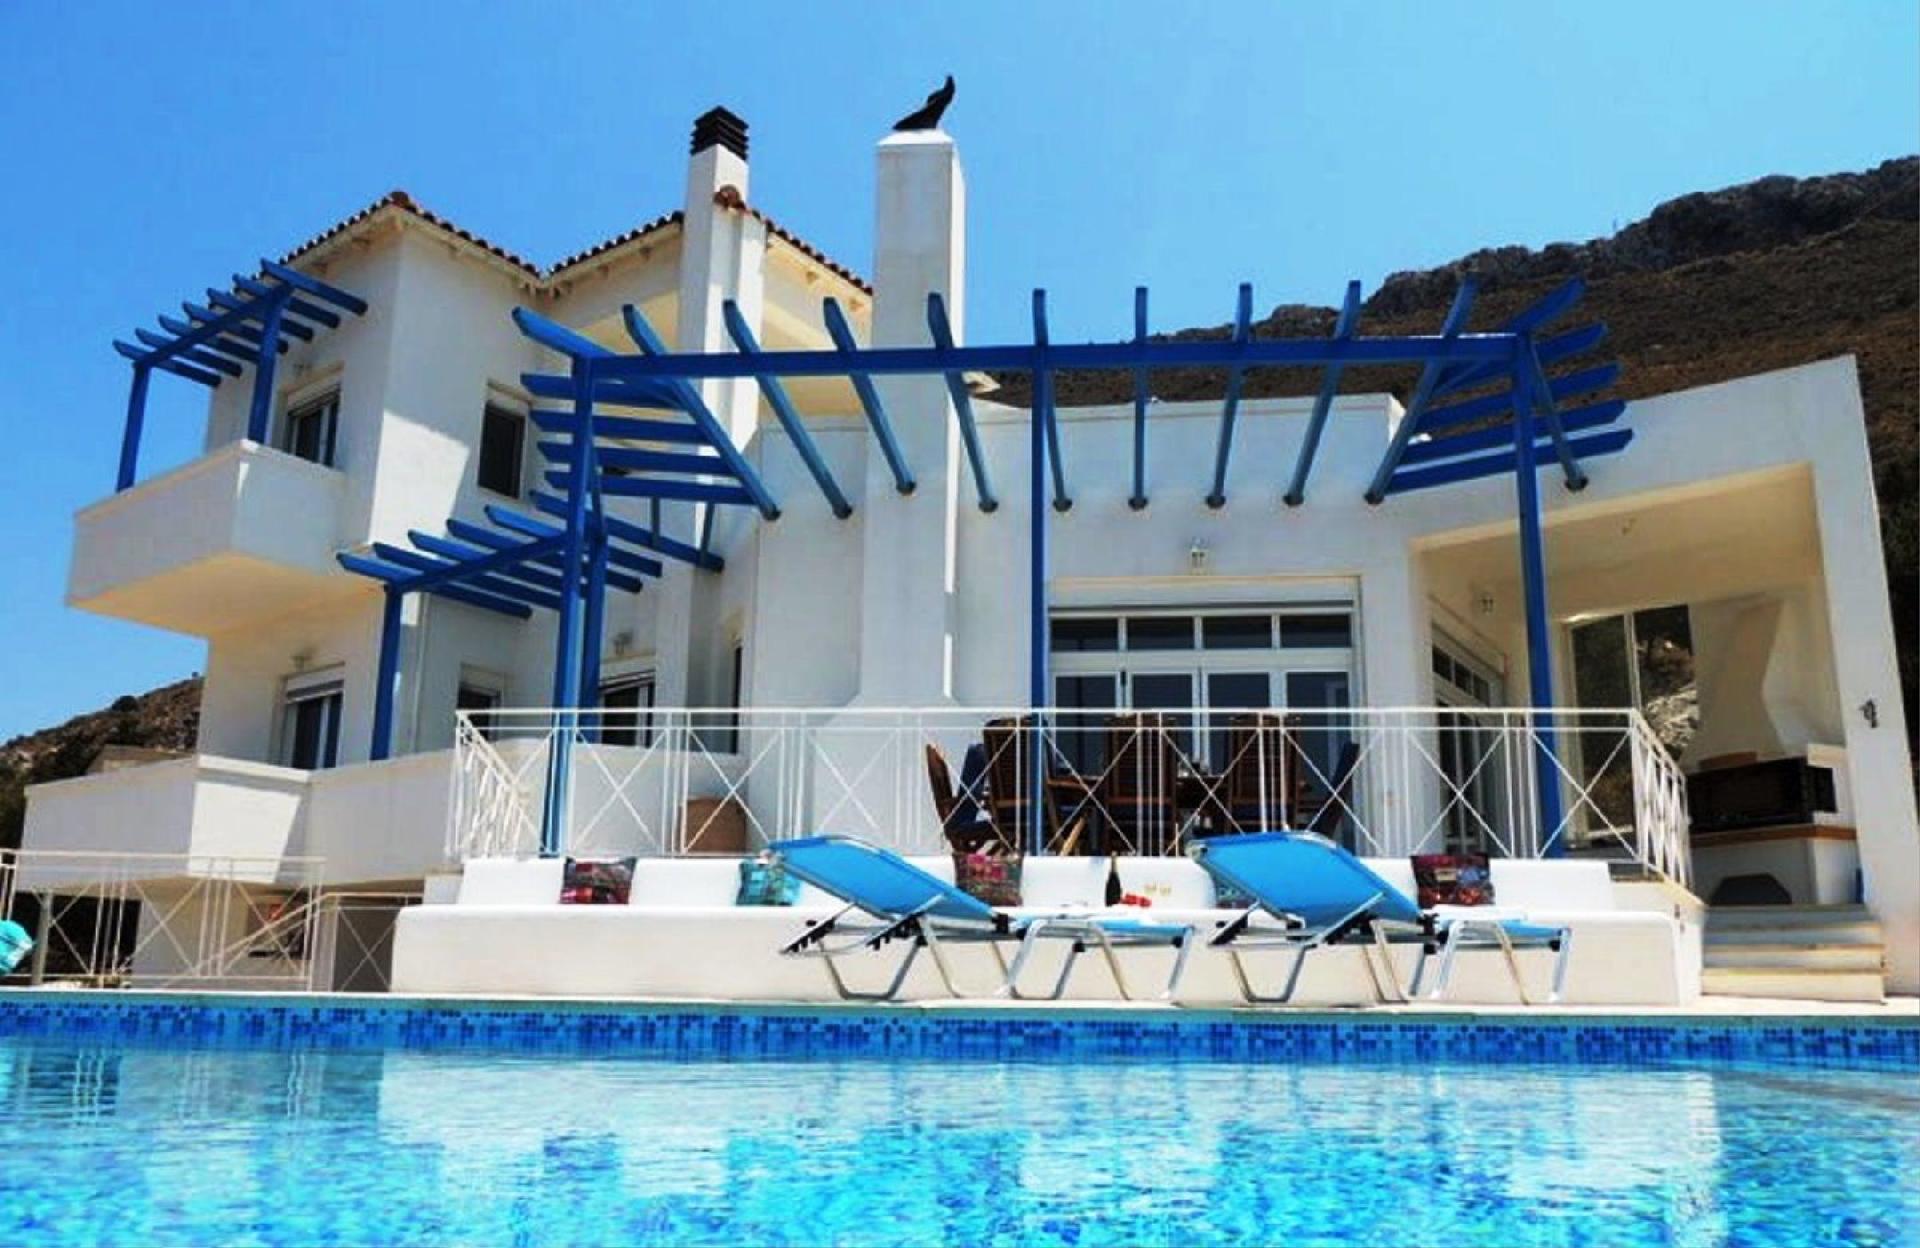 Ferienhaus mit Privatpool für 6 Personen  + 4 Ferienhaus in Griechenland